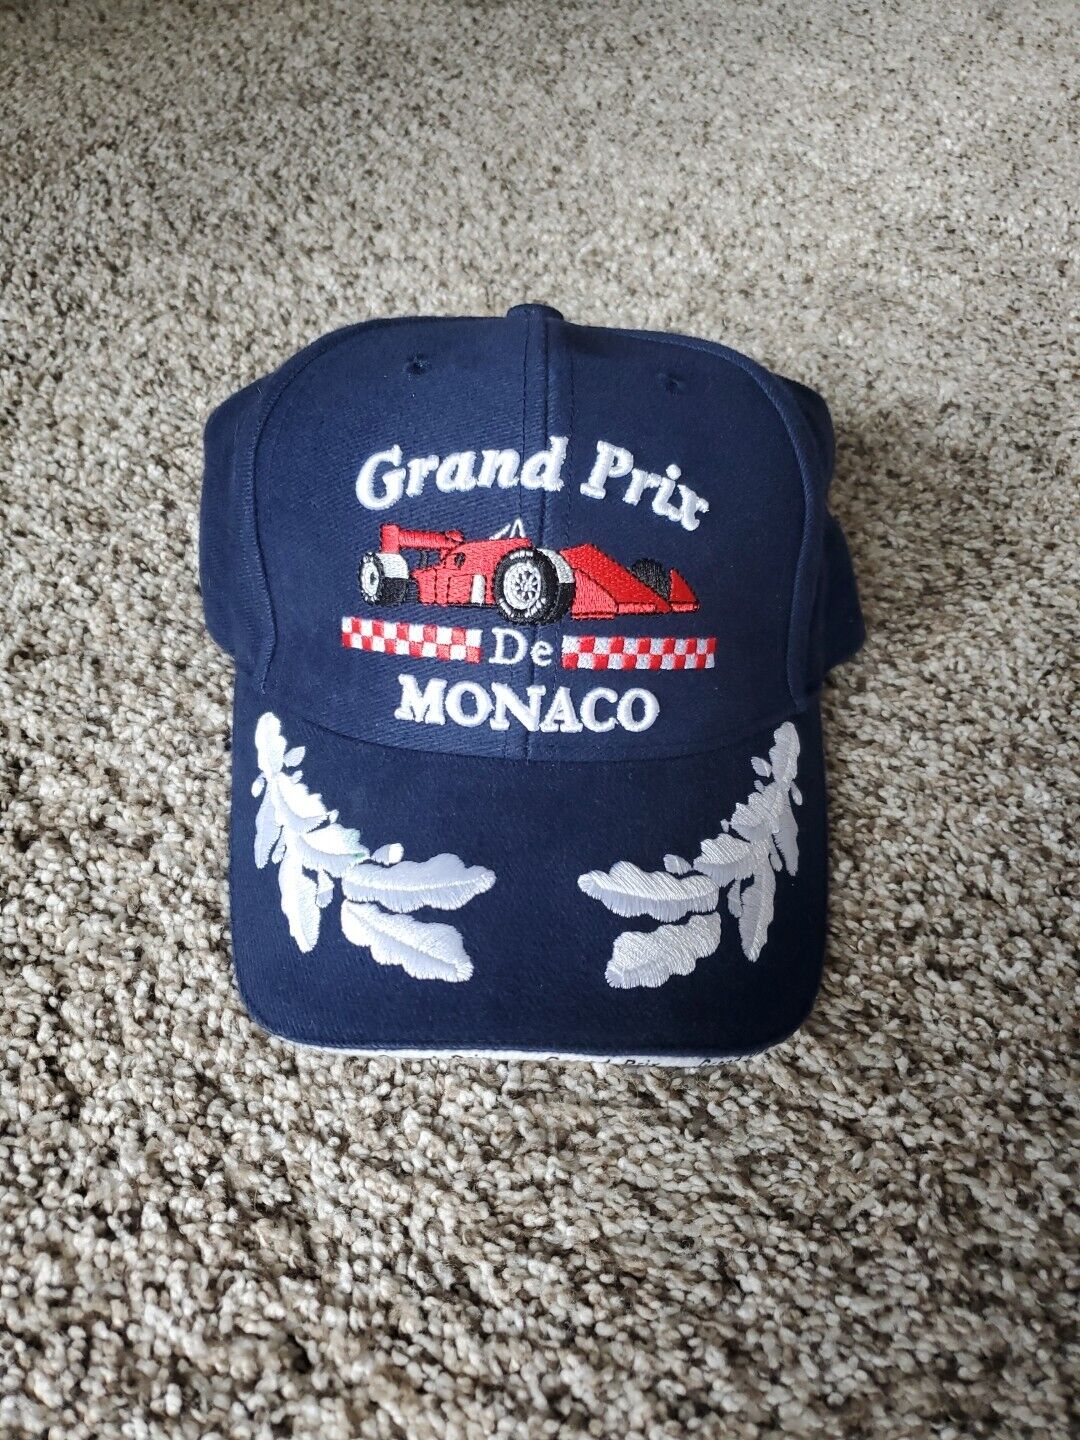 Grand Prix De Monaco Formula F1 Cap Hat Blue One Size Embroidered